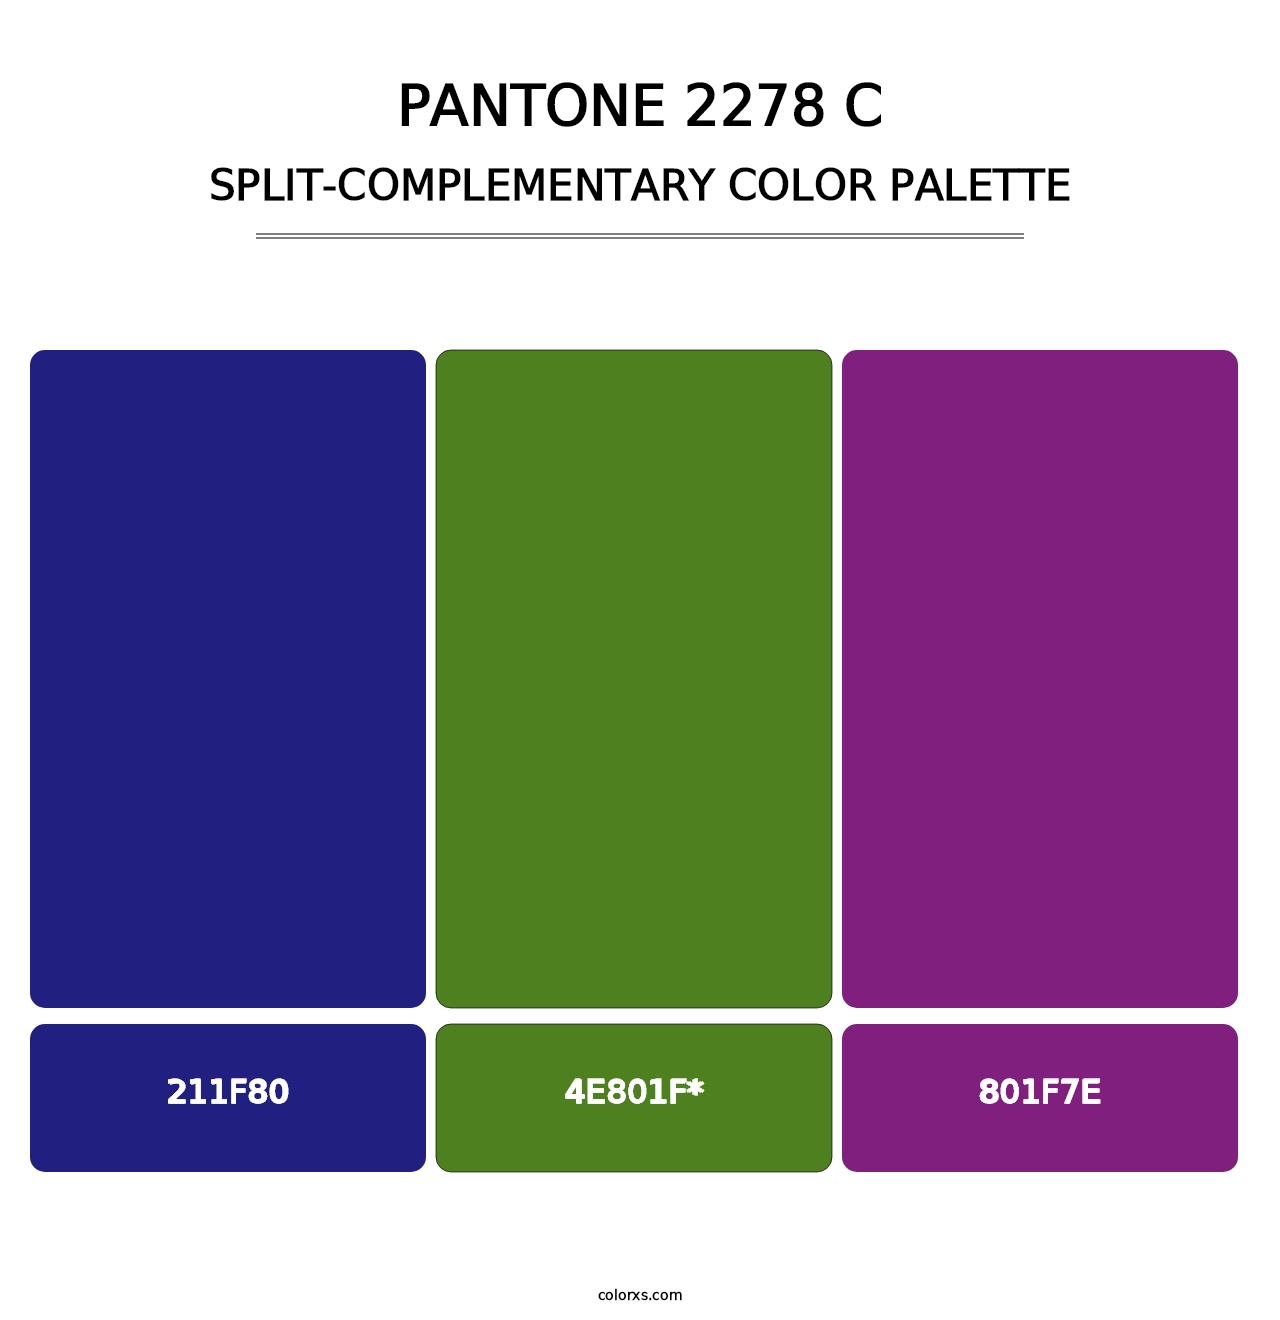 PANTONE 2278 C - Split-Complementary Color Palette